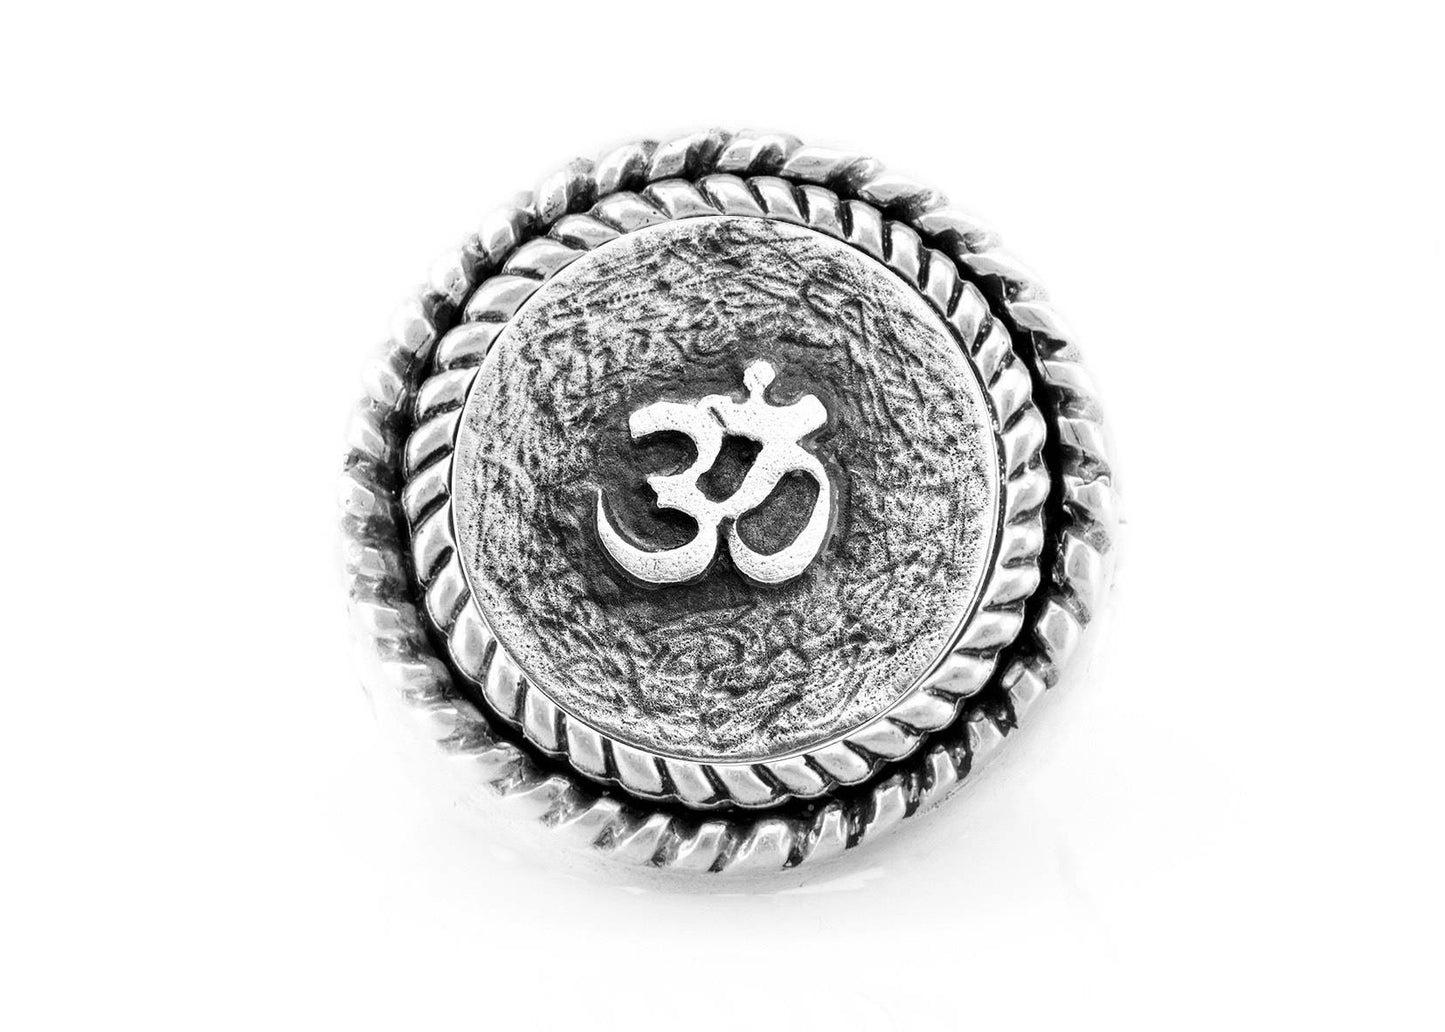 Om Mantra Ring: The Om symbol with fleur de lis symbol on ring